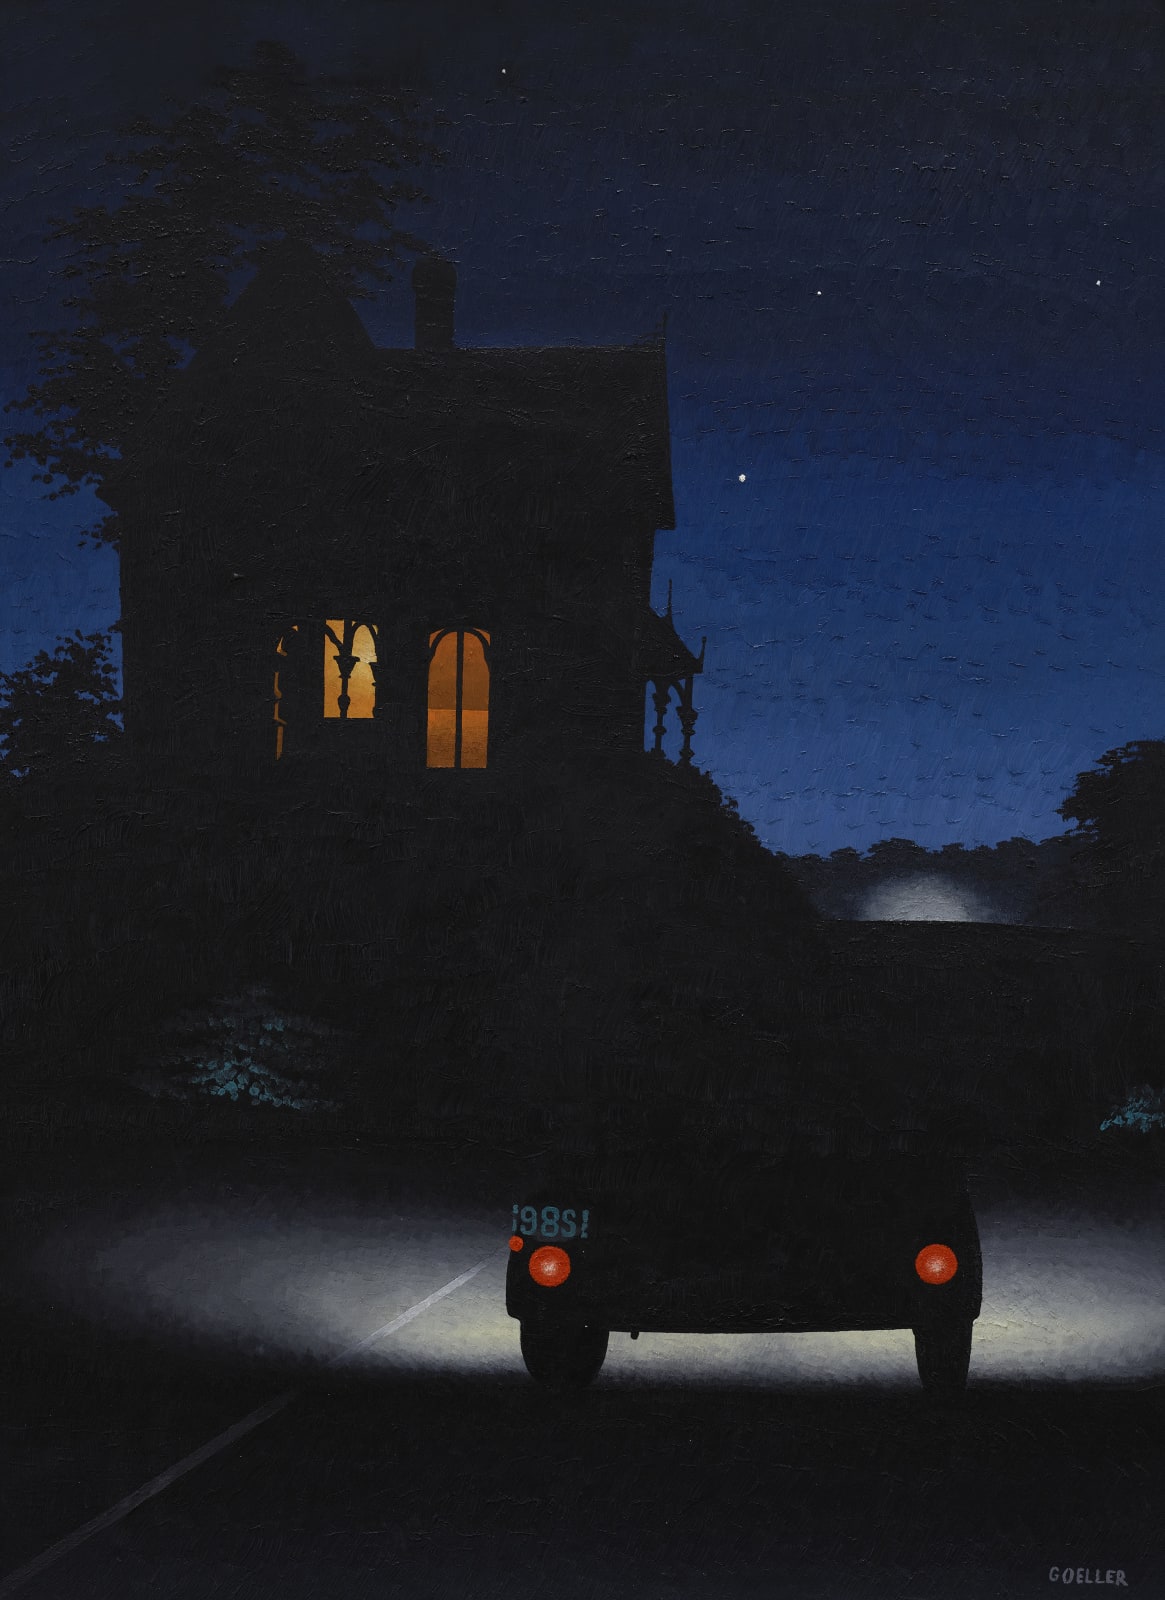 Charles Goeller, Night Scene